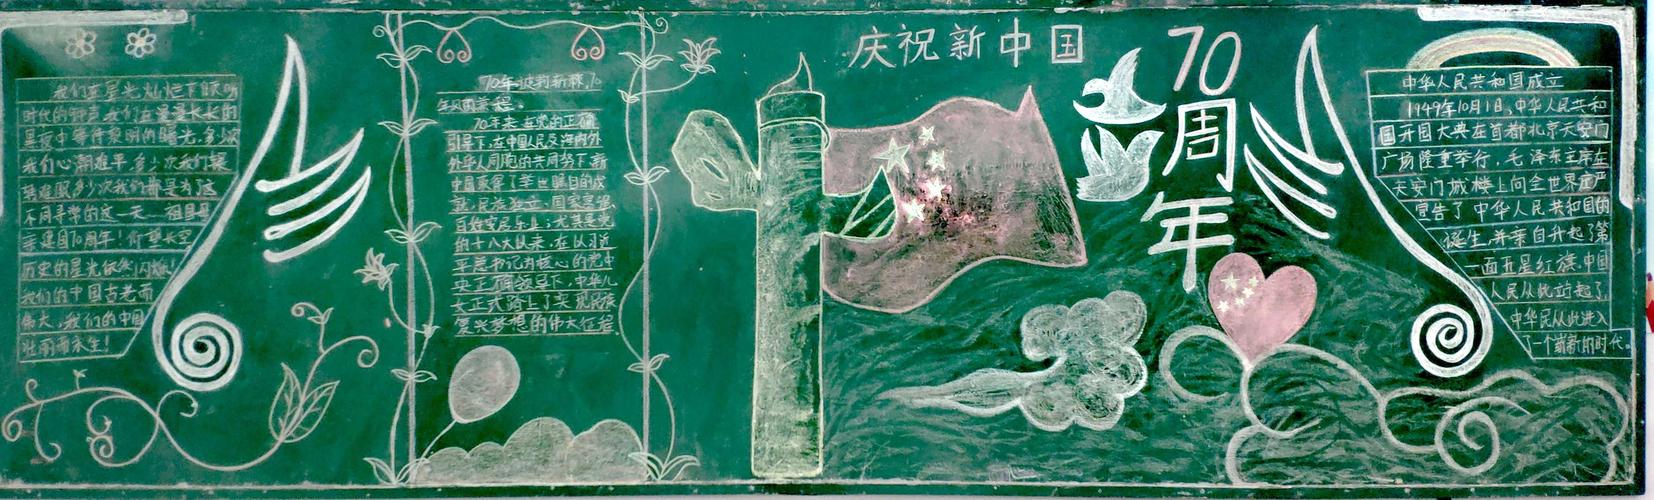 奋斗新时代庆祝中华人民共和国70周年主题黑板报评比活动